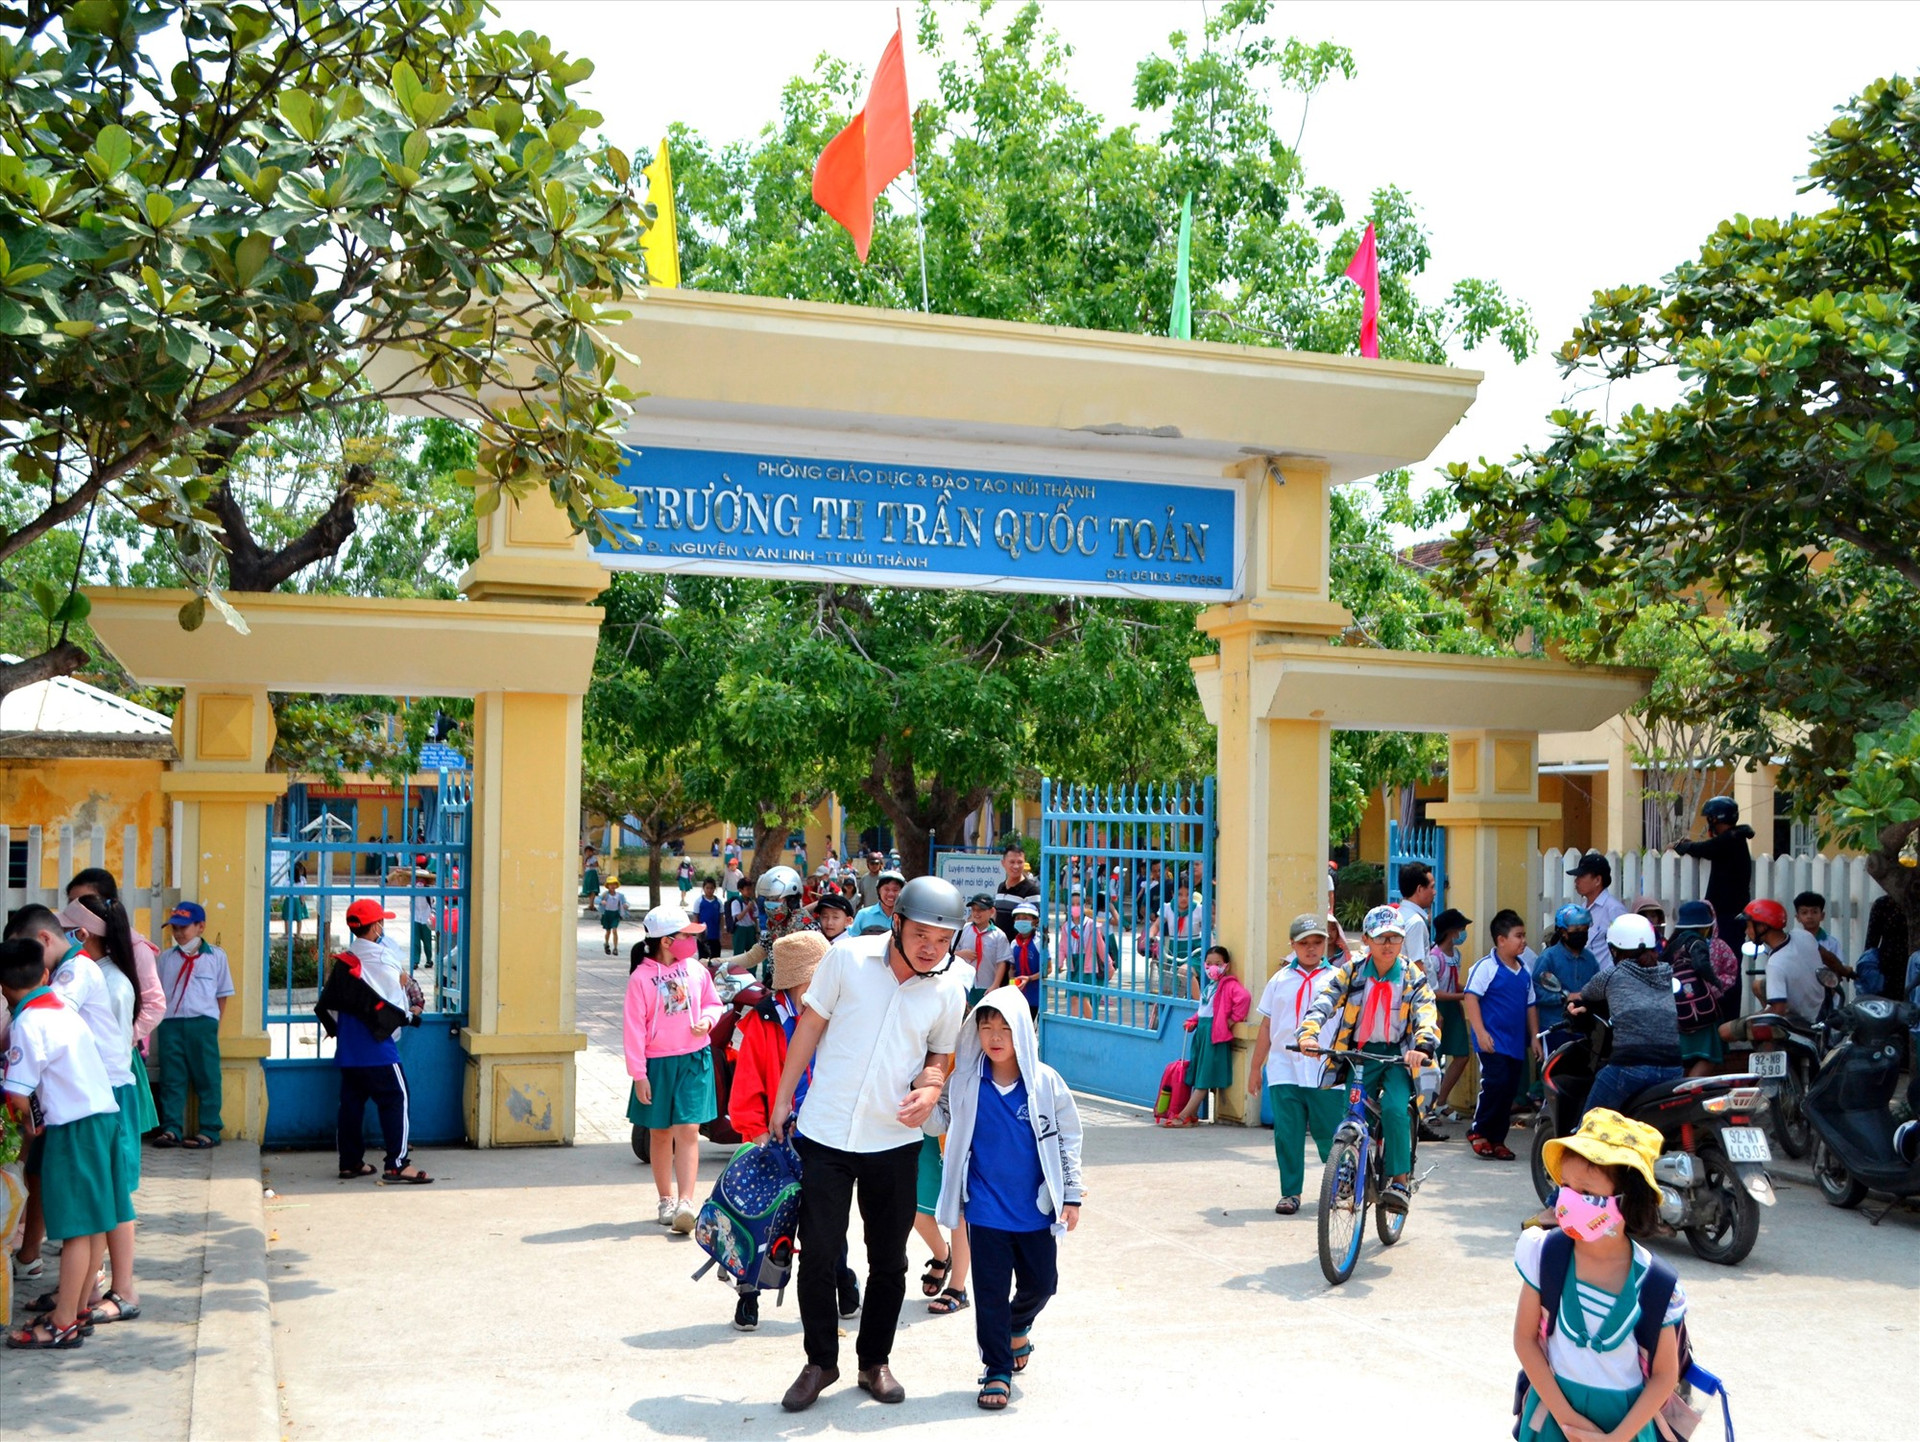 Giờ tan học tại cổng một trường tiểu học ở thị trấn Núi Thành đã thông thoáng hơn trước (ảnh chụp trước khi dịch Covid-19 bộc phát trở lại). Ảnh: C.T